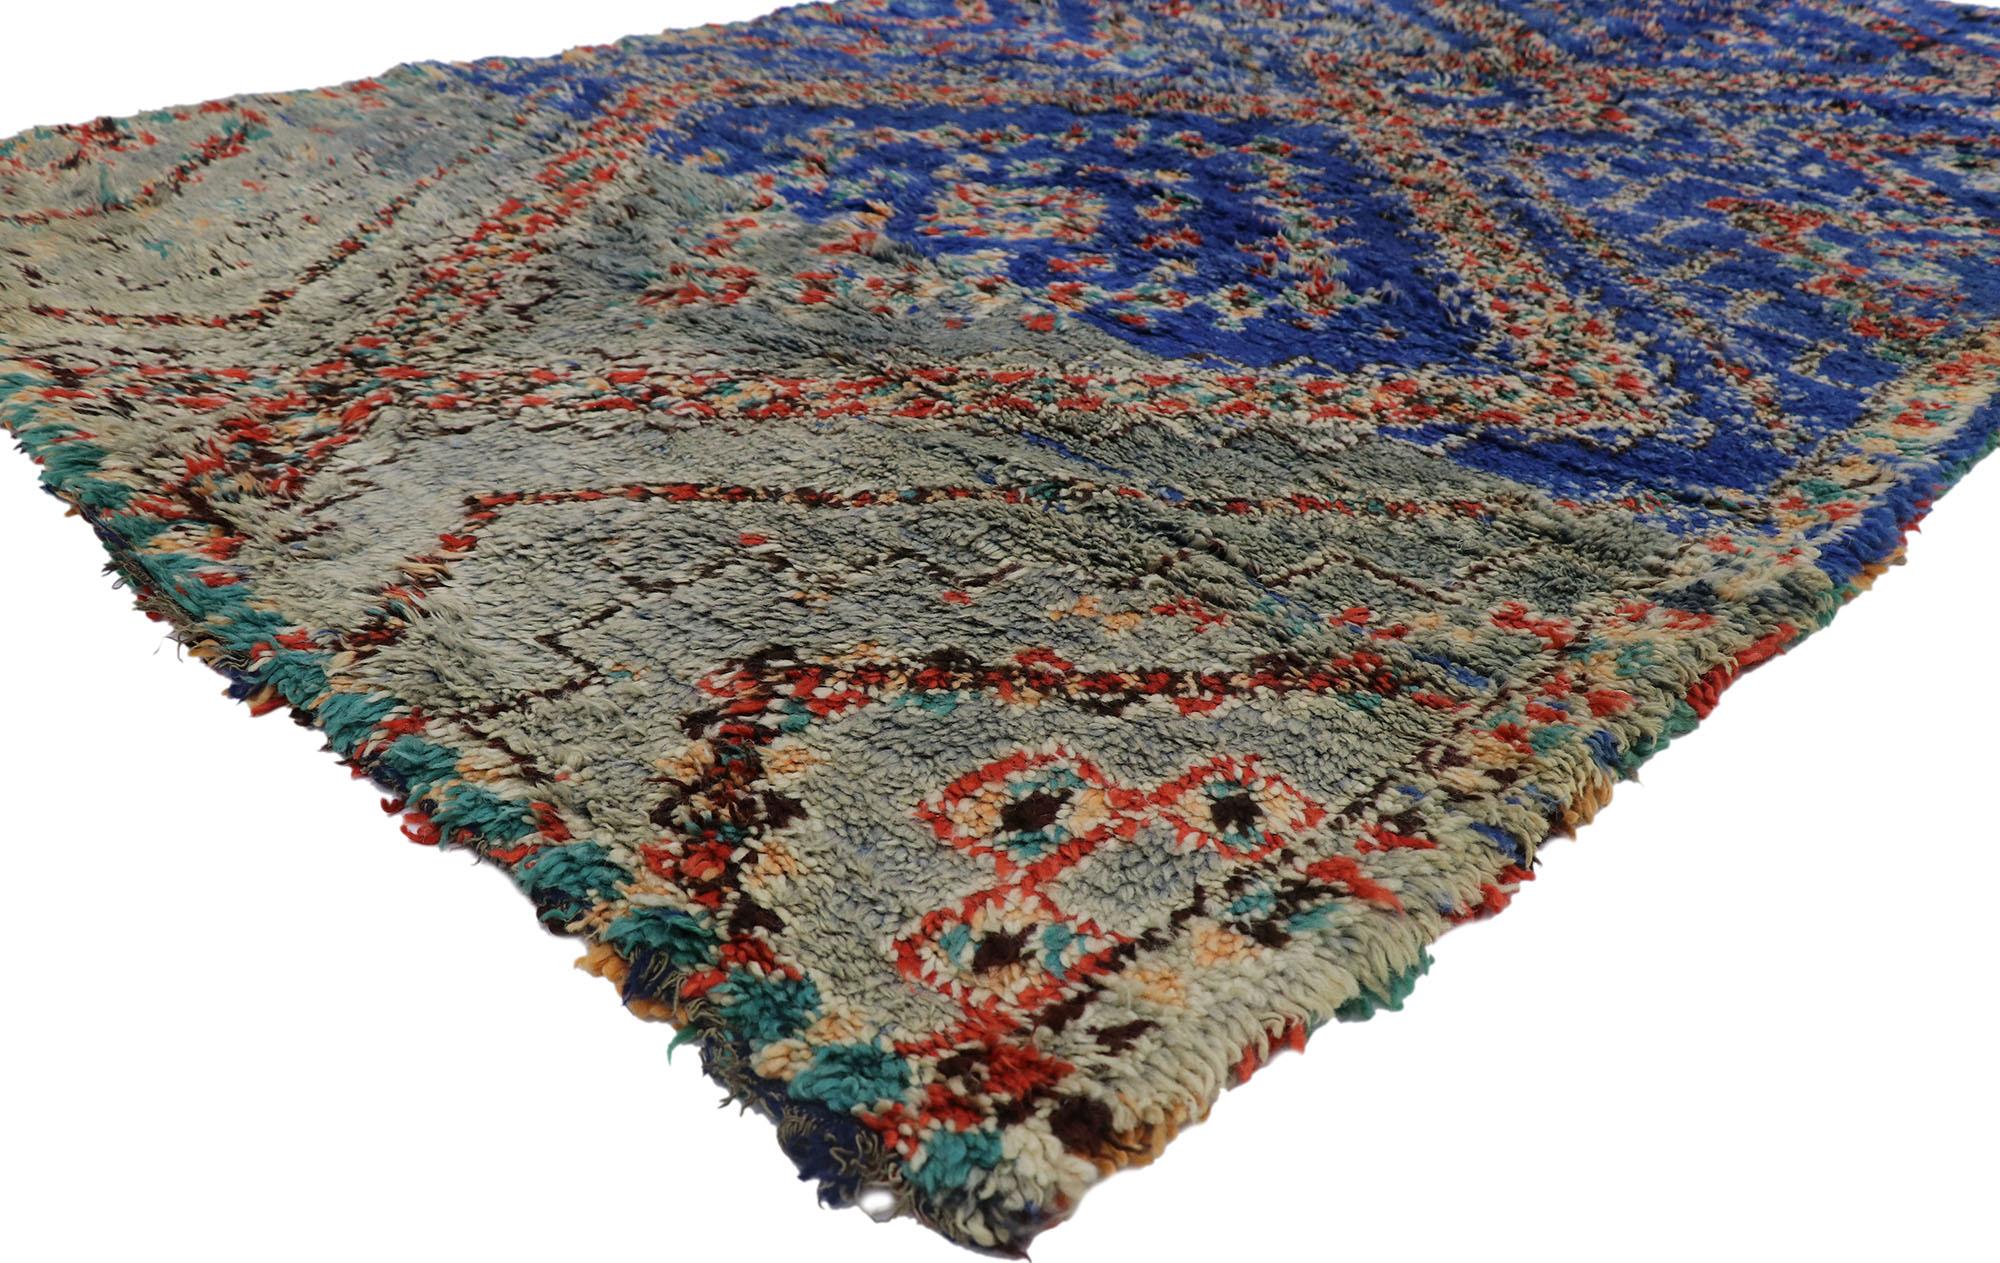 21290 Vintage Beni MGuild Marokkanischer Teppich, 06'02 x 10'06.
Kühnes Boho-Chic trifft auf Midcentury Modern in diesem handgeknüpften marokkanischen Wollteppich im Vintage-Stil. Das unverwechselbare Tribal-Muster und die lebendigen Erdtöne, die in